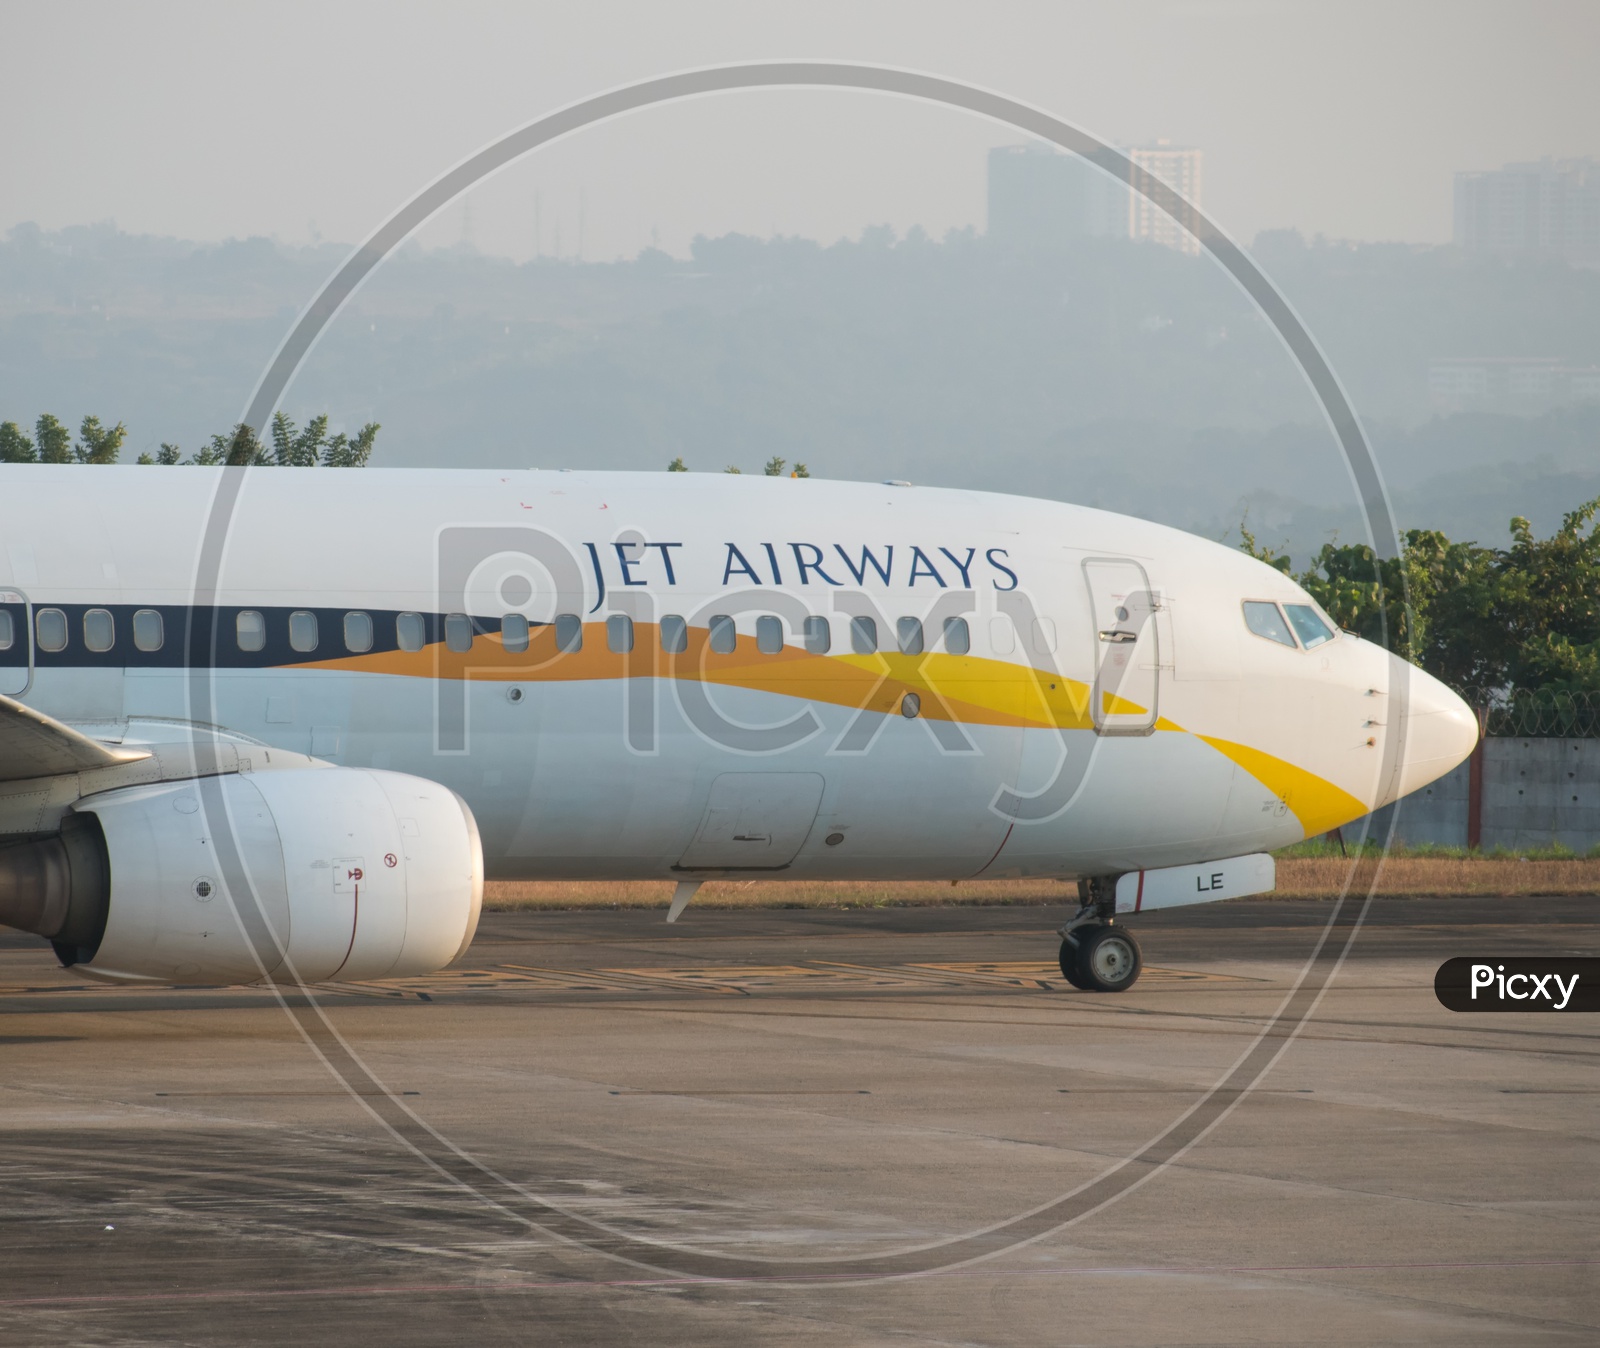 Jet airways Boeing 737